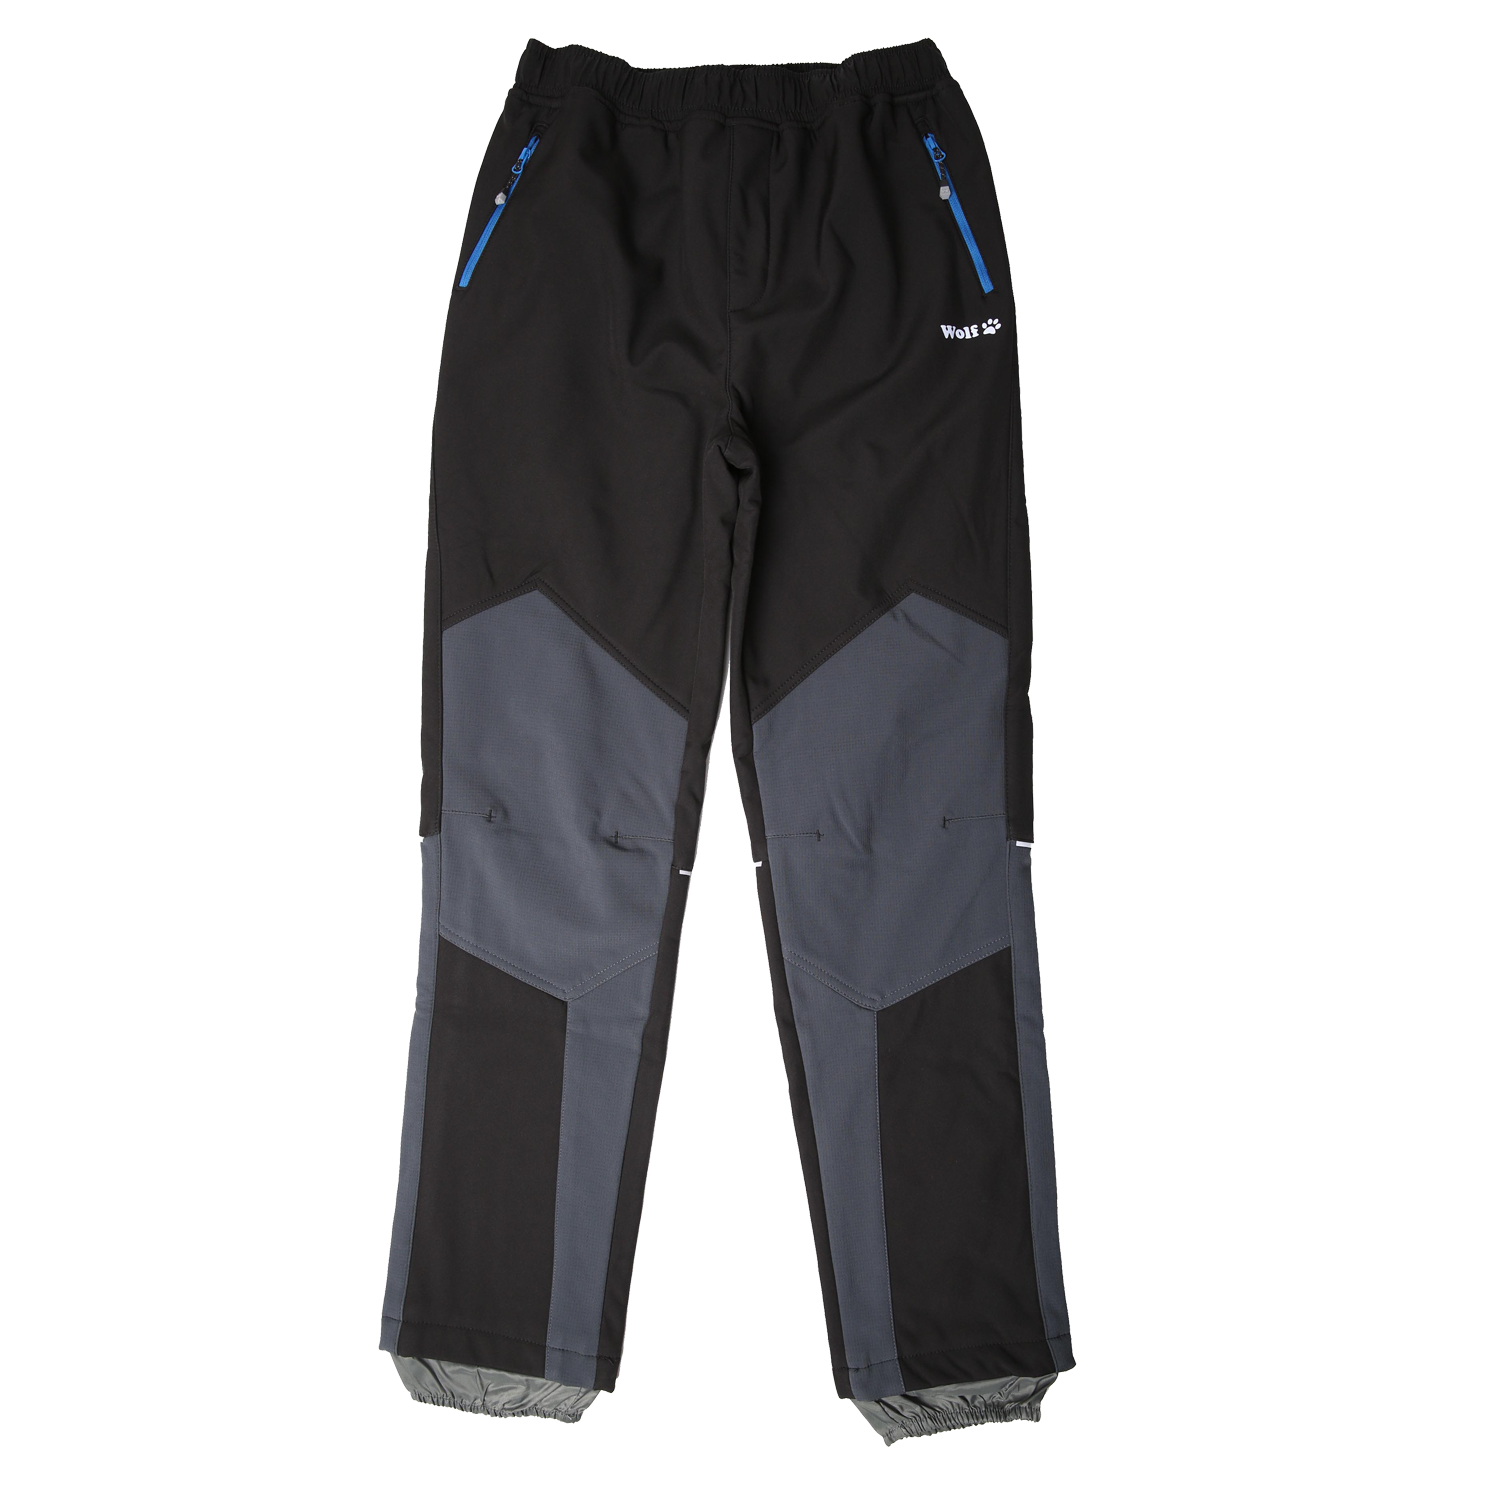 Chlapecké softshellové kalhoty, zateplené - Wolf B2297, černá/ šedá kolena Barva: Černá, Velikost: 146